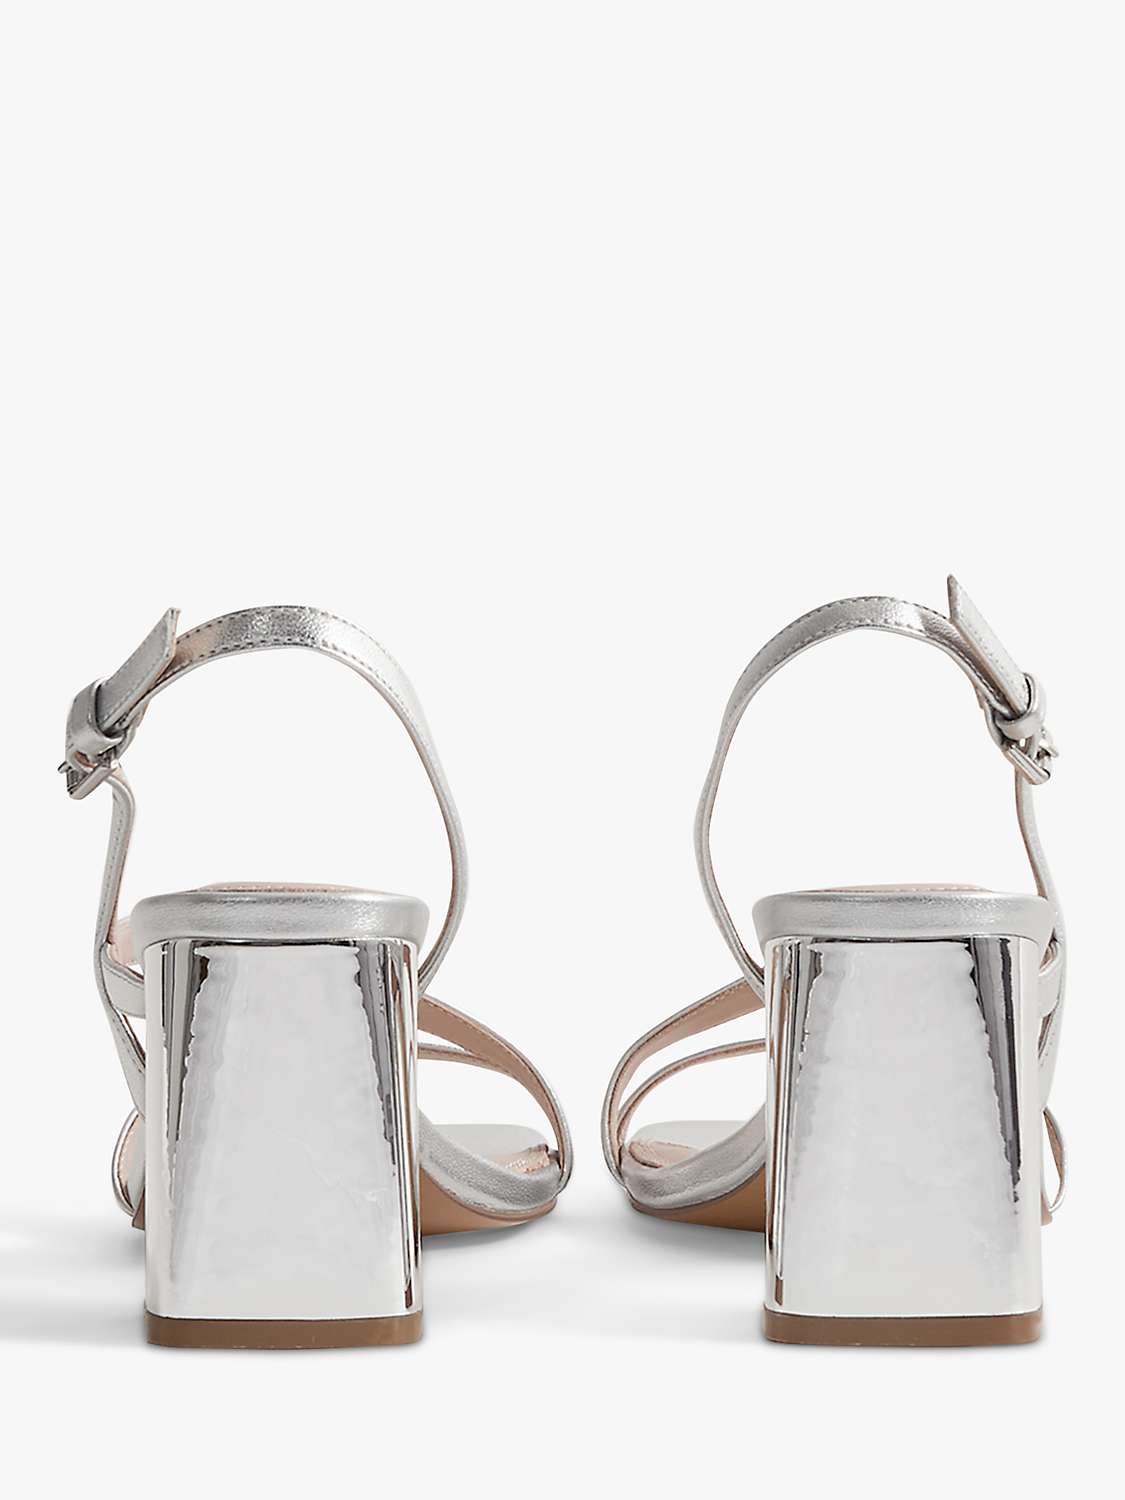 Buy Reiss Alice Block Heel Leather Sandals Online at johnlewis.com